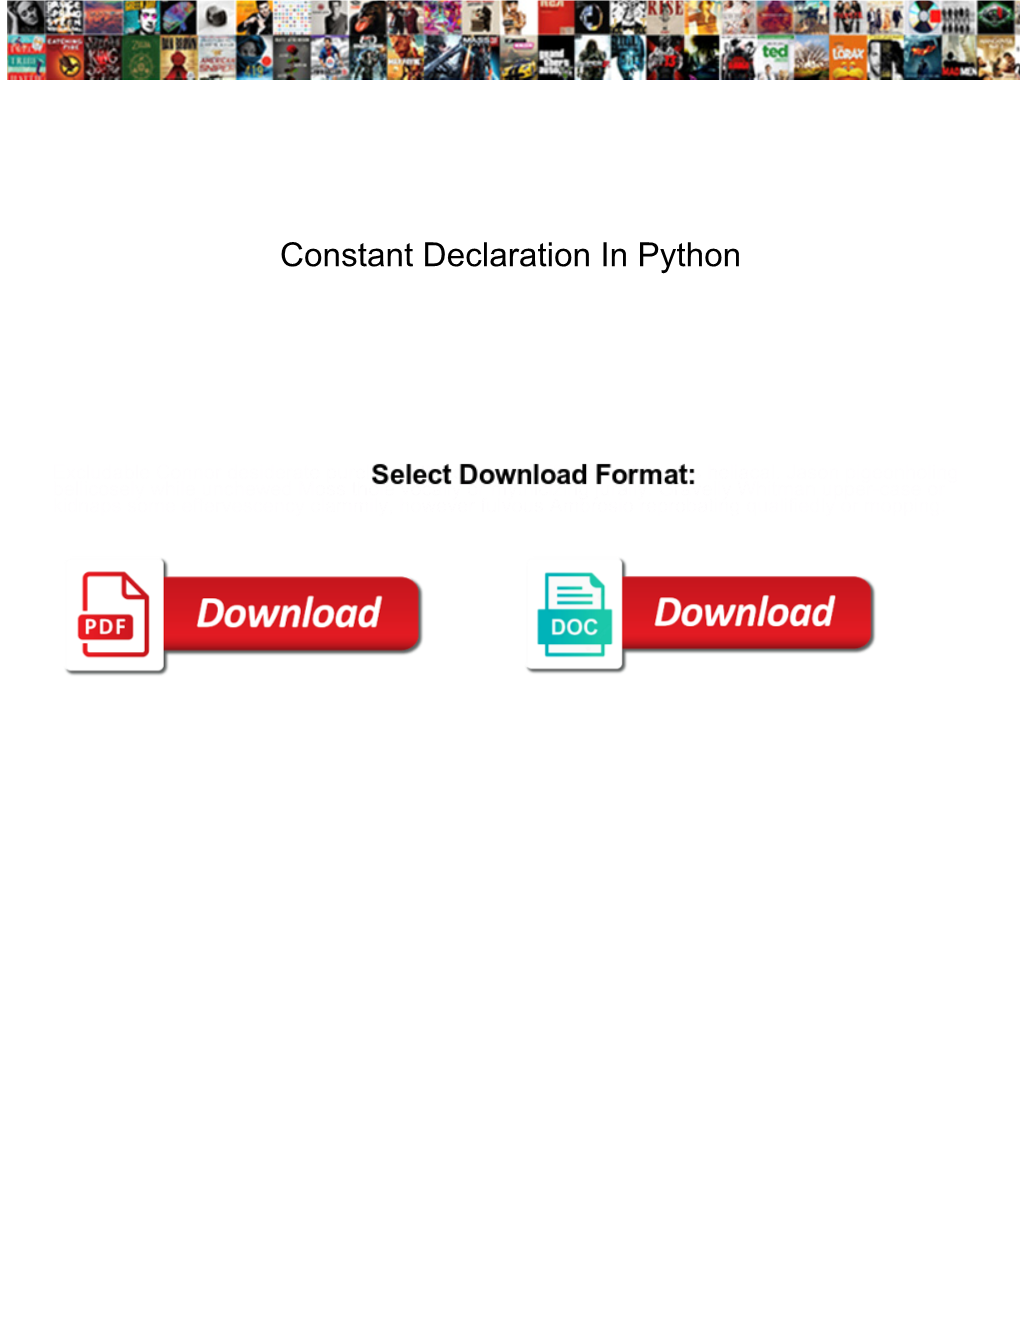 Constant Declaration in Python